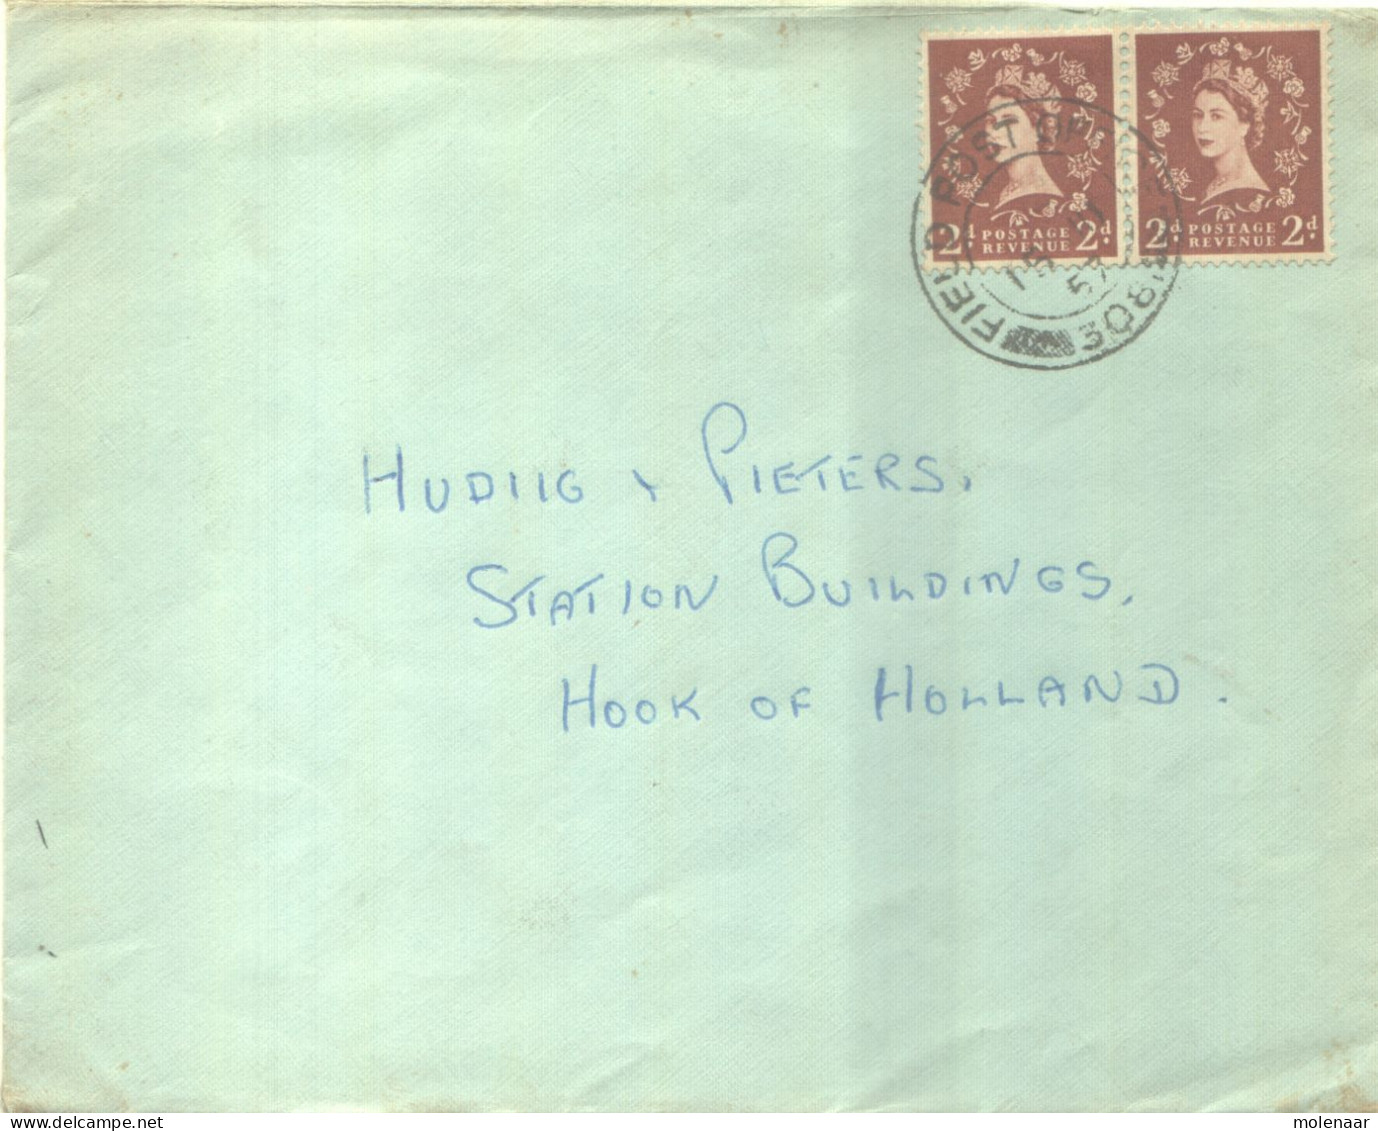 Postzegels > Europa > Groot-Brittannië > 1952-2022 Elizabeth II > 1971-1980  > Brief Met 2 Postzegels (16814) - Brieven En Documenten